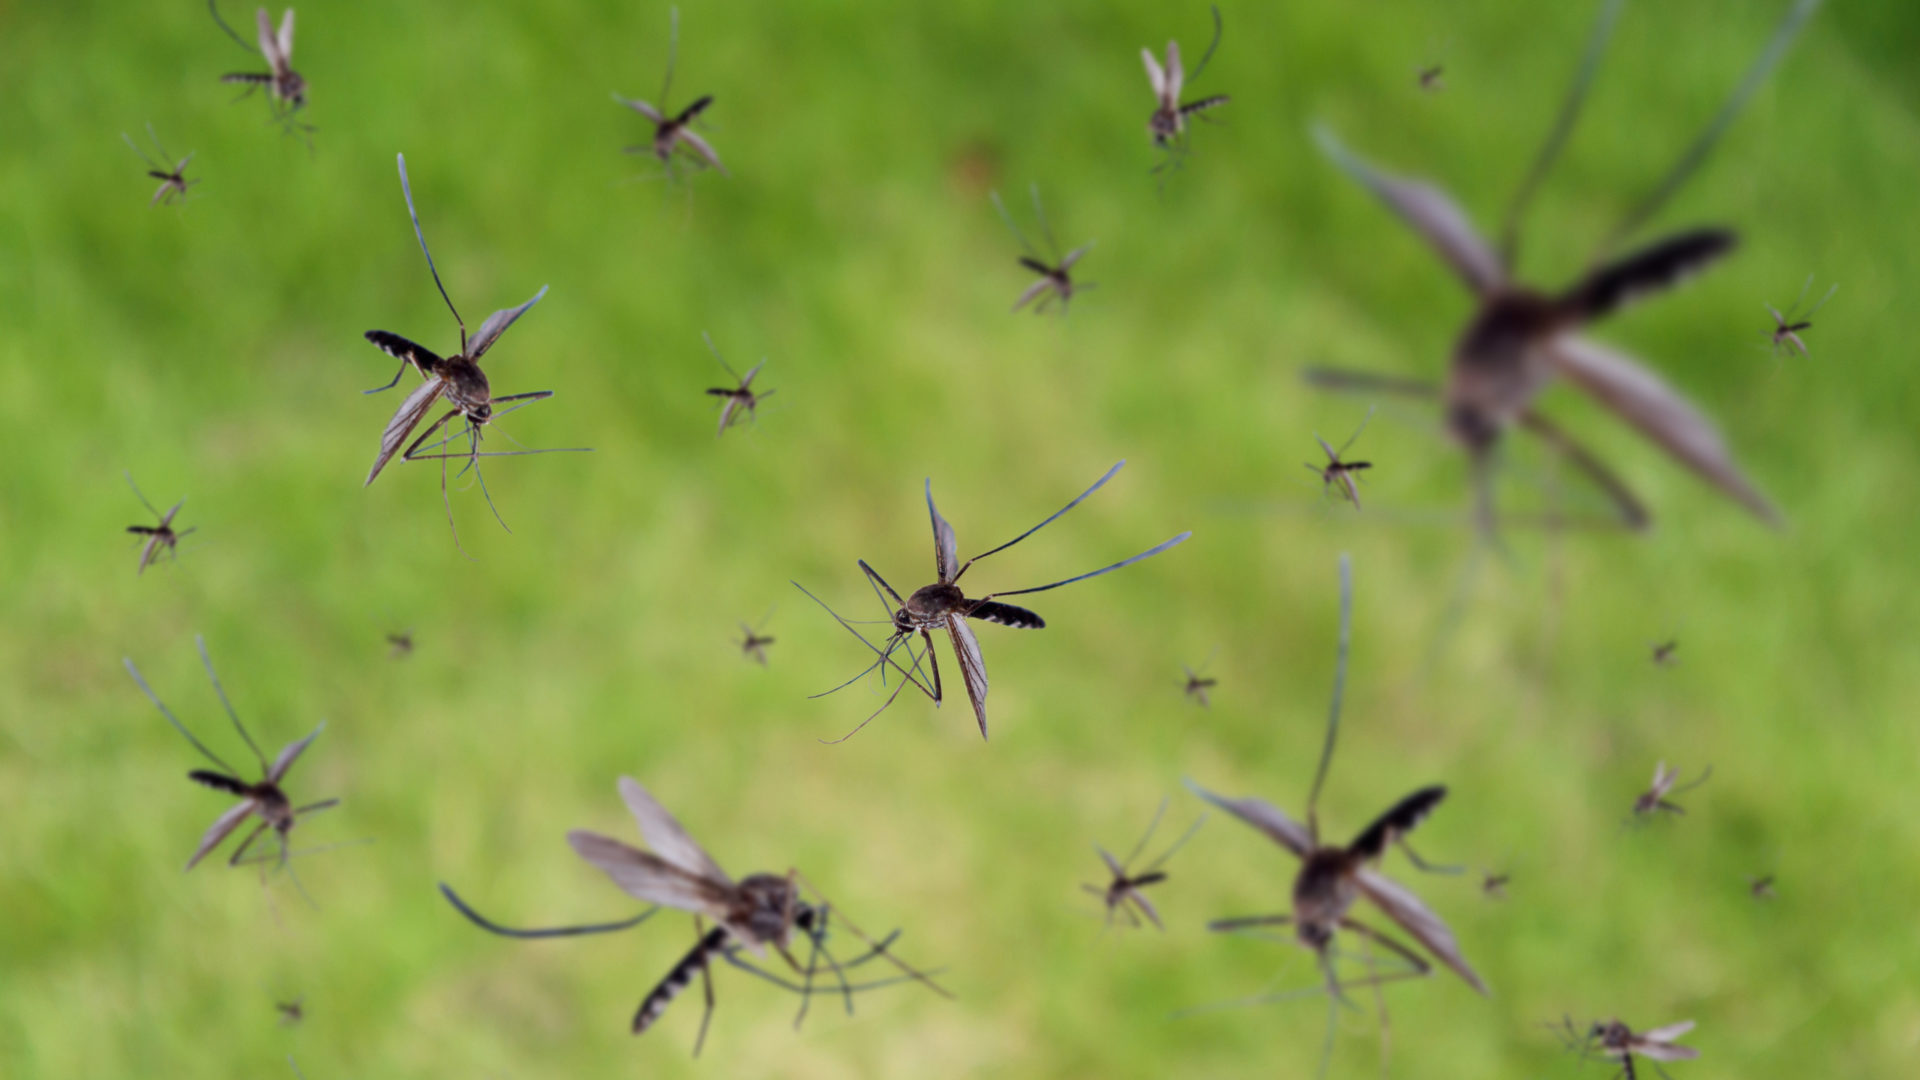 Hyttyset levittävät tauteja, kuten malariaa.